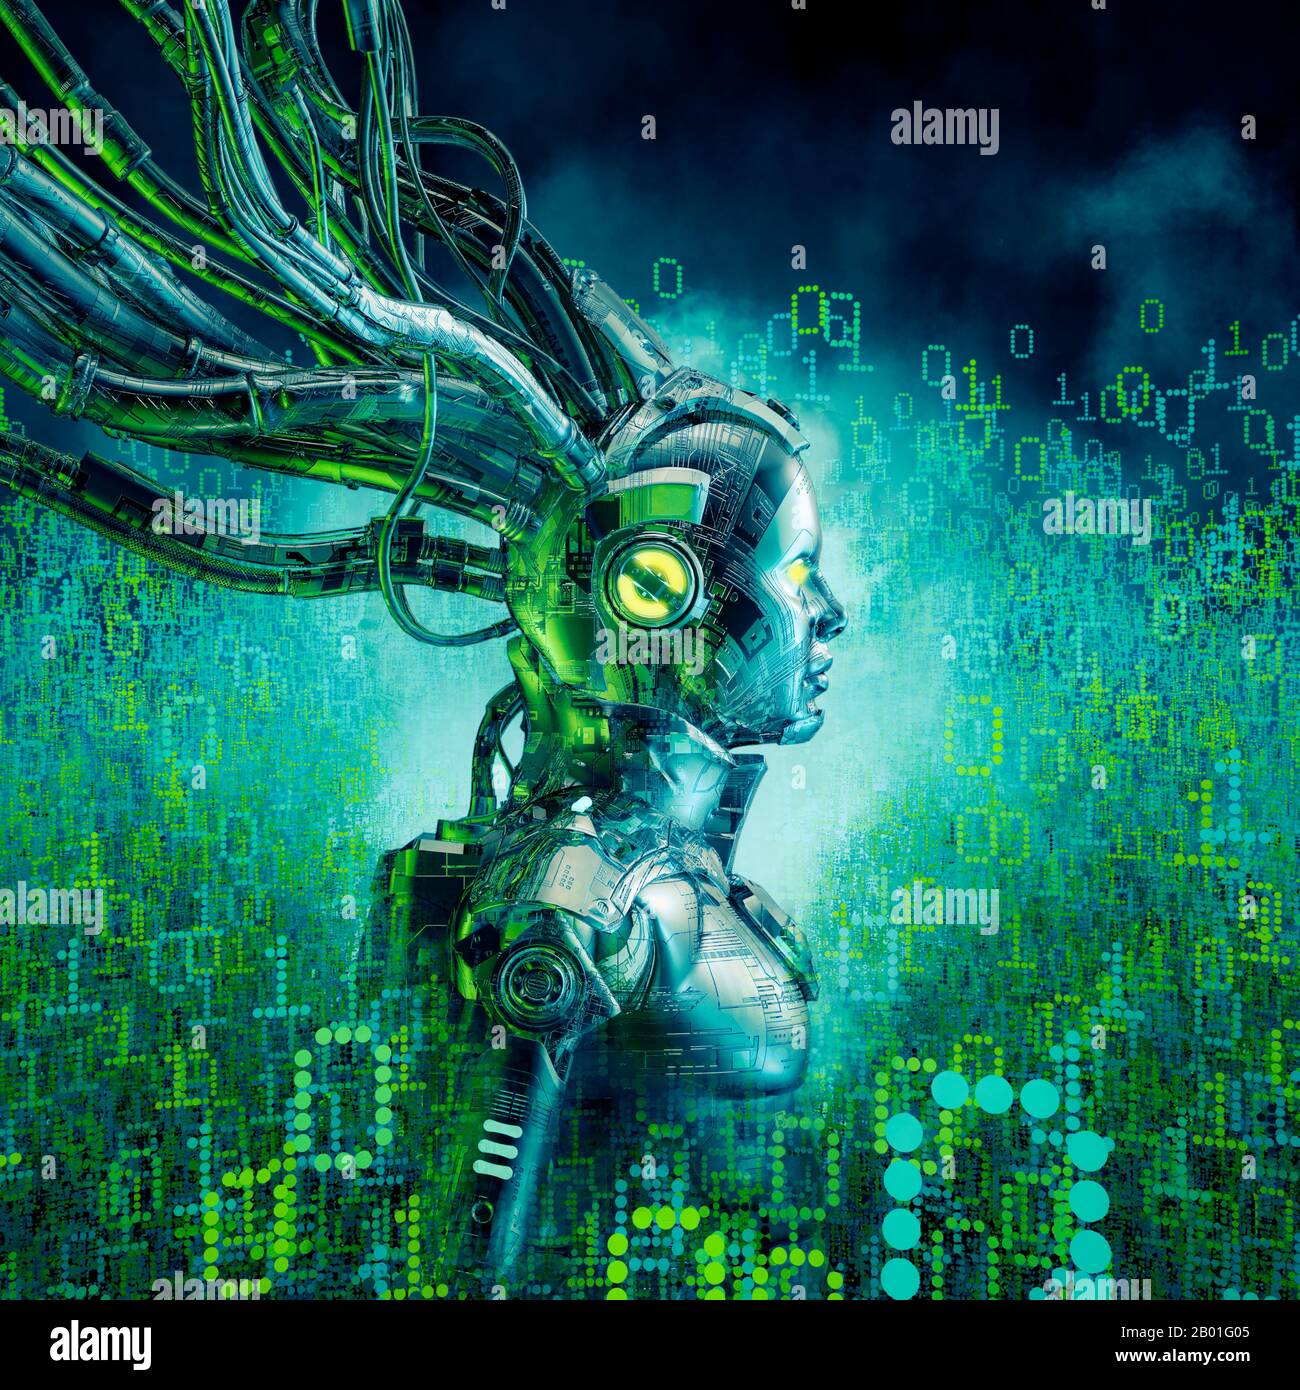 Binäres Träumermädchen/3D-Illustration von Science-Fiction-futuristischen weiblichen androiden, umgeben von leuchtenden Binärdaten Stockfoto